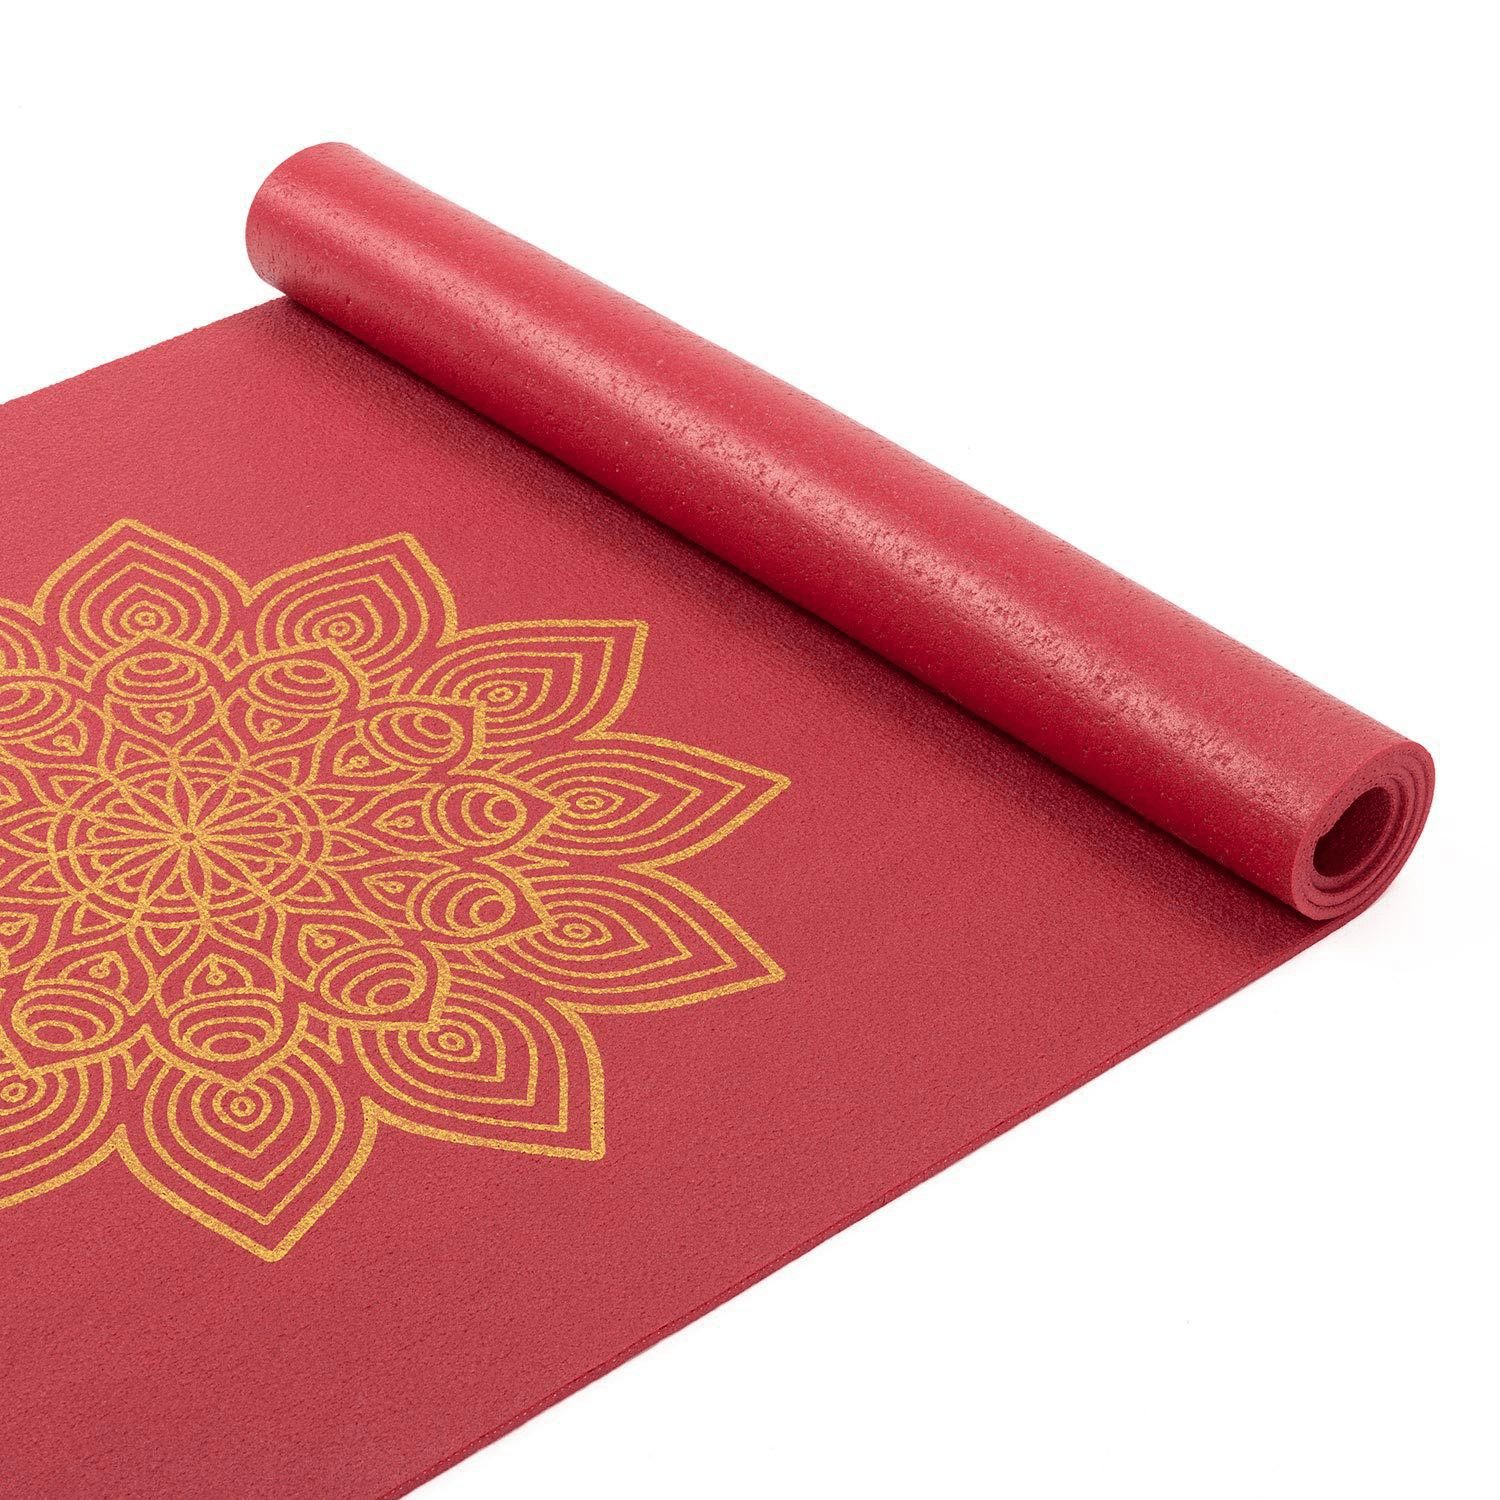 tapete de yoga vermelho com estrela dourada desenhada ao meio